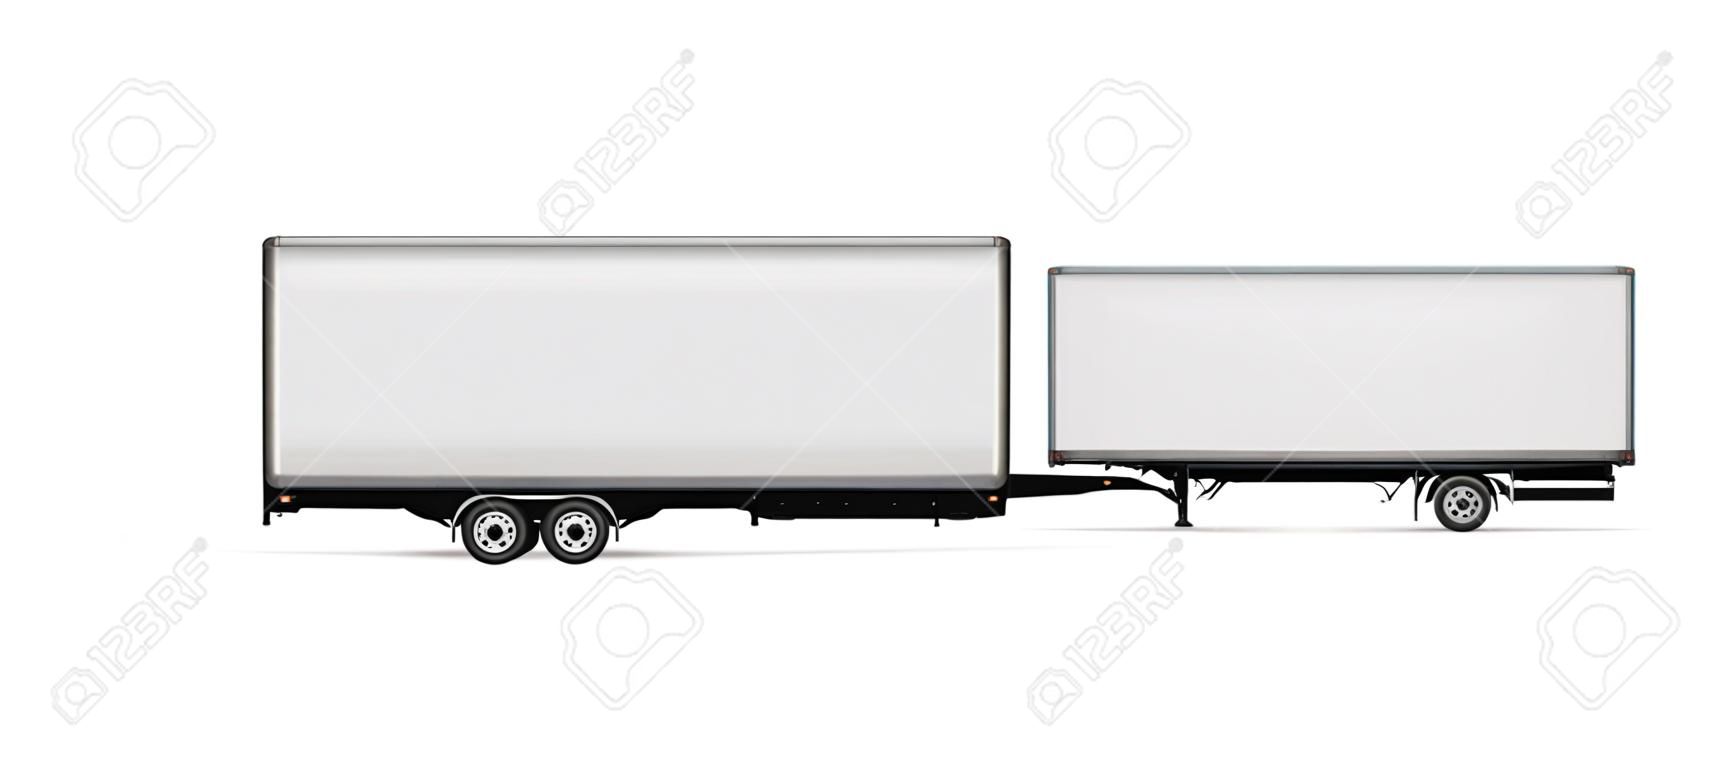 Modèle vectoriel de camion semi-remorque. Camion isolé avec remorque sur blanc pour la marque du véhicule, identité visuelle. Tous les éléments des groupes sur des calques séparés pour une édition et une recoloration faciles